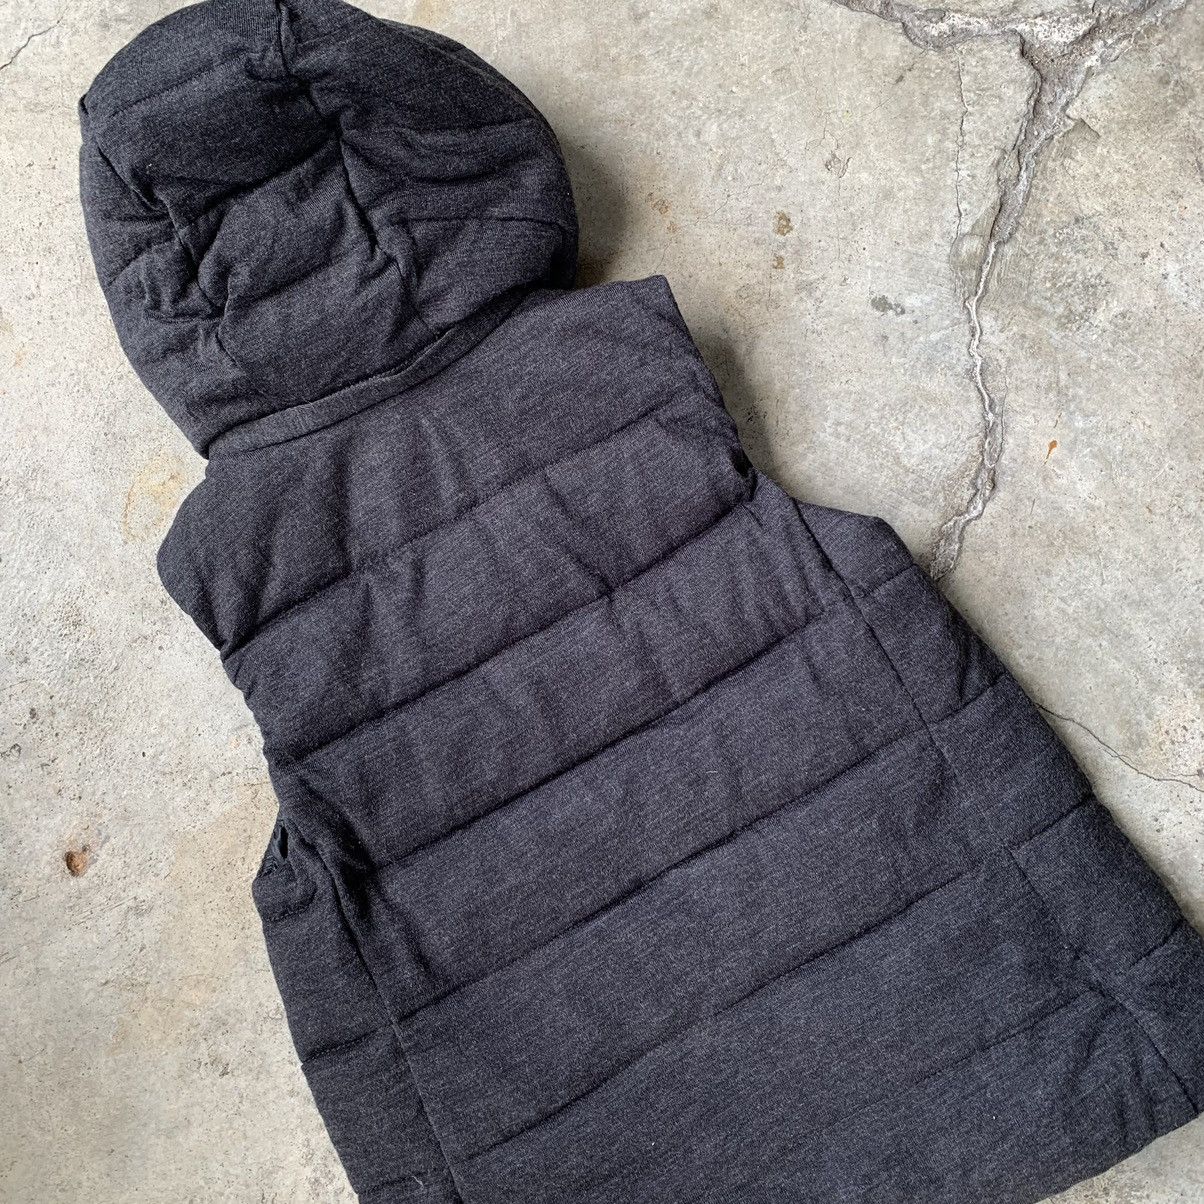 Gap Gap black hoodie vest Size US XS / EU 42 / 0 - 11 Thumbnail